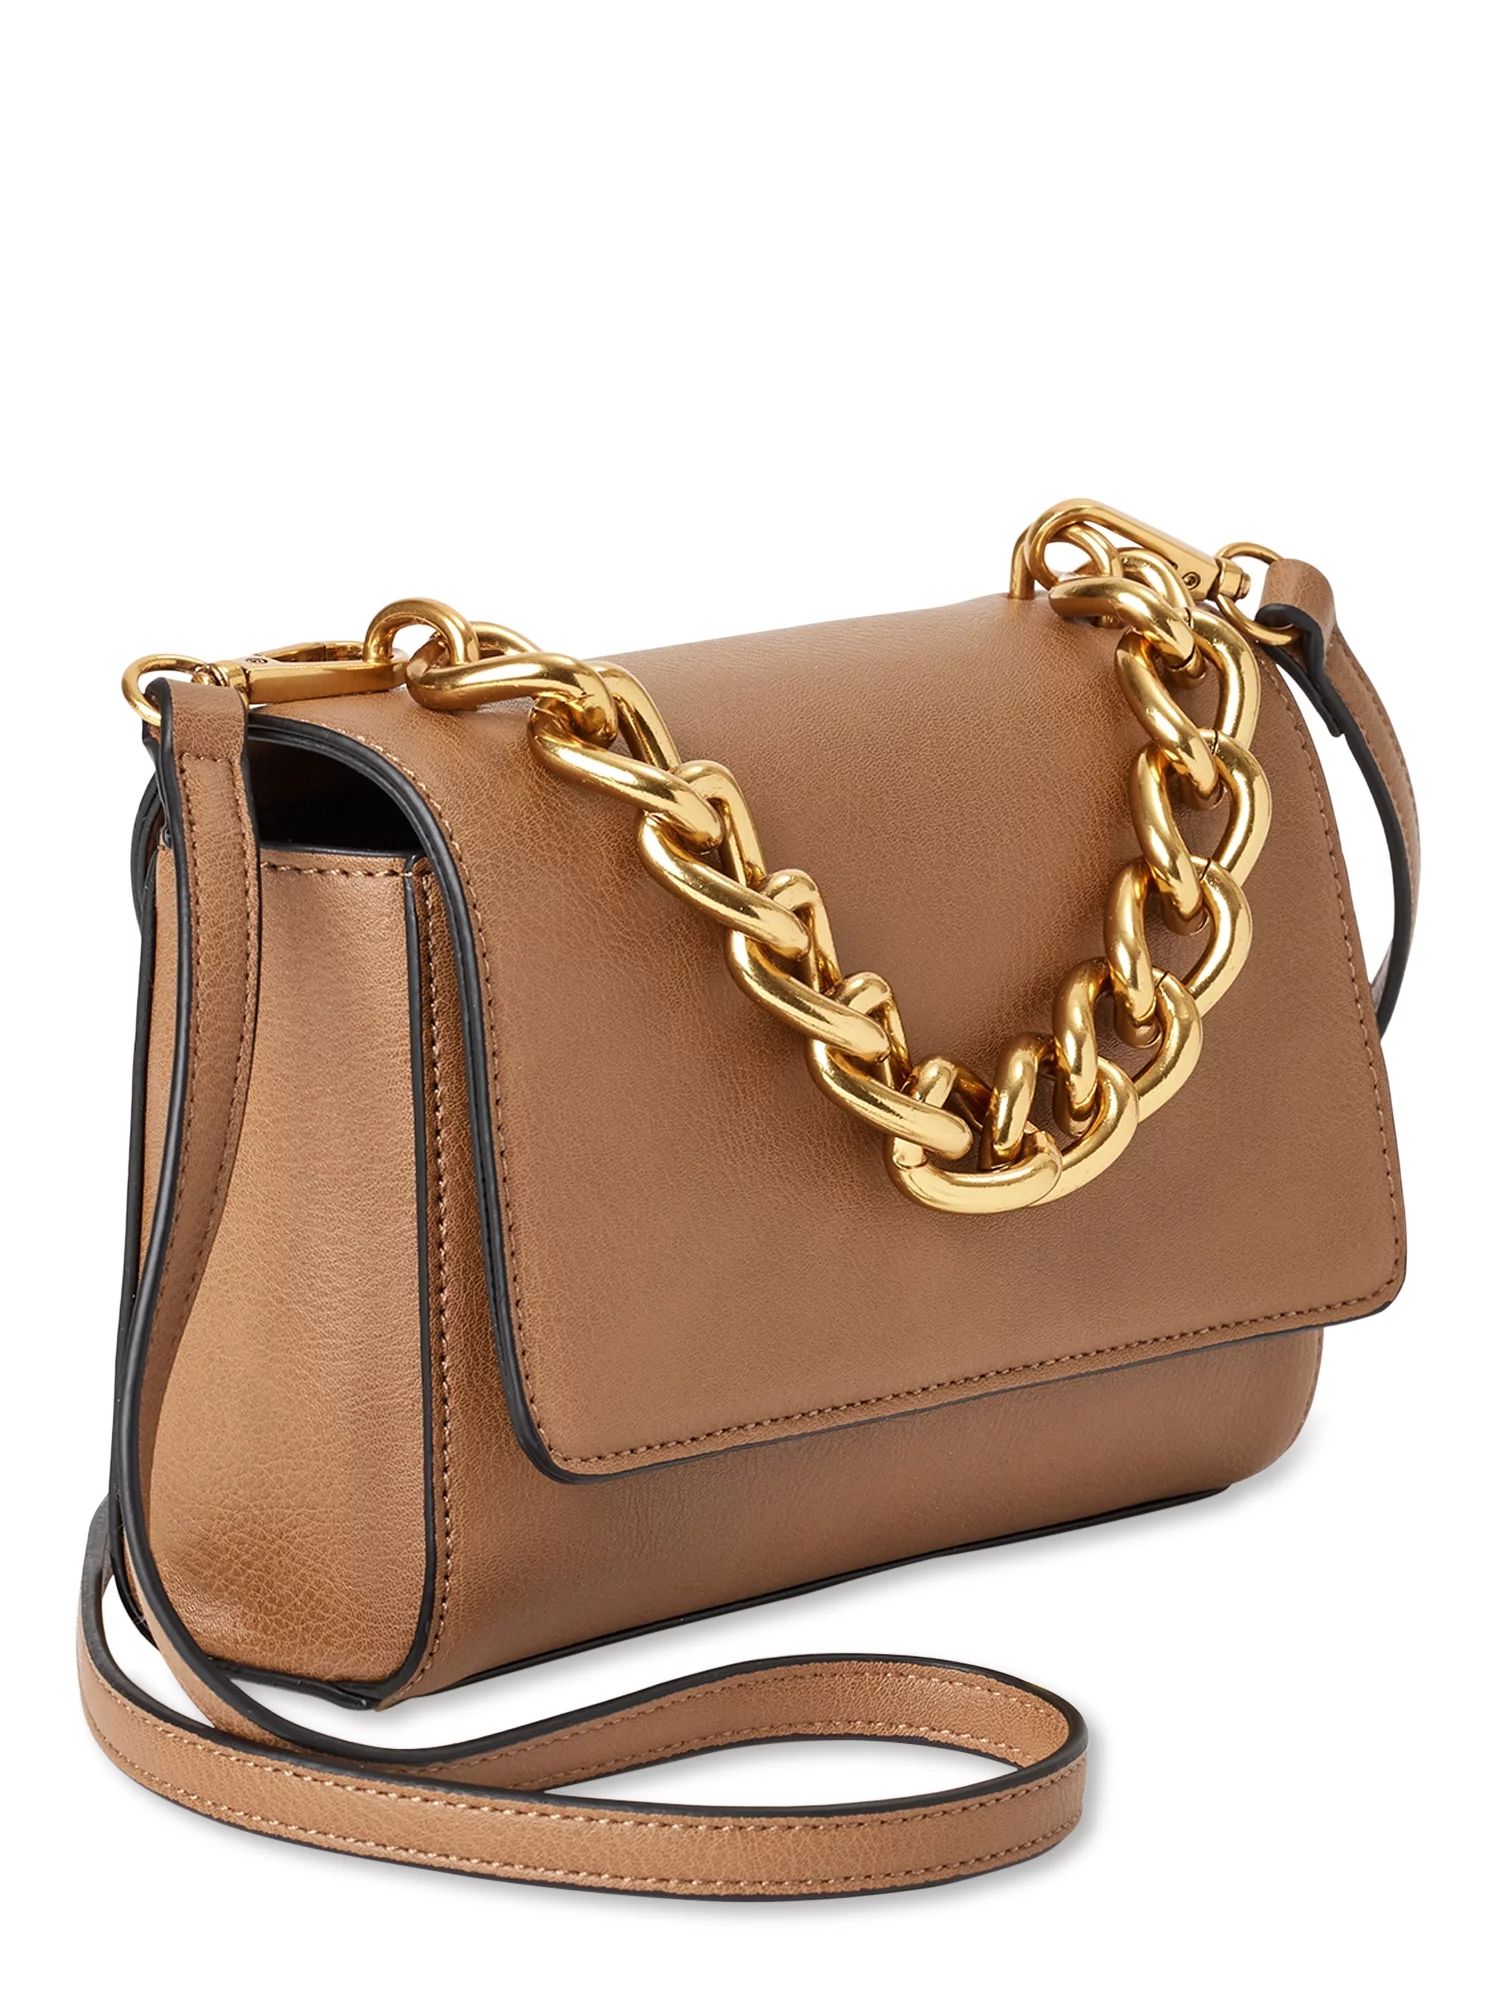 Scoop Women’s Flap Crossbody Chain Handbag Camel | Walmart (US)